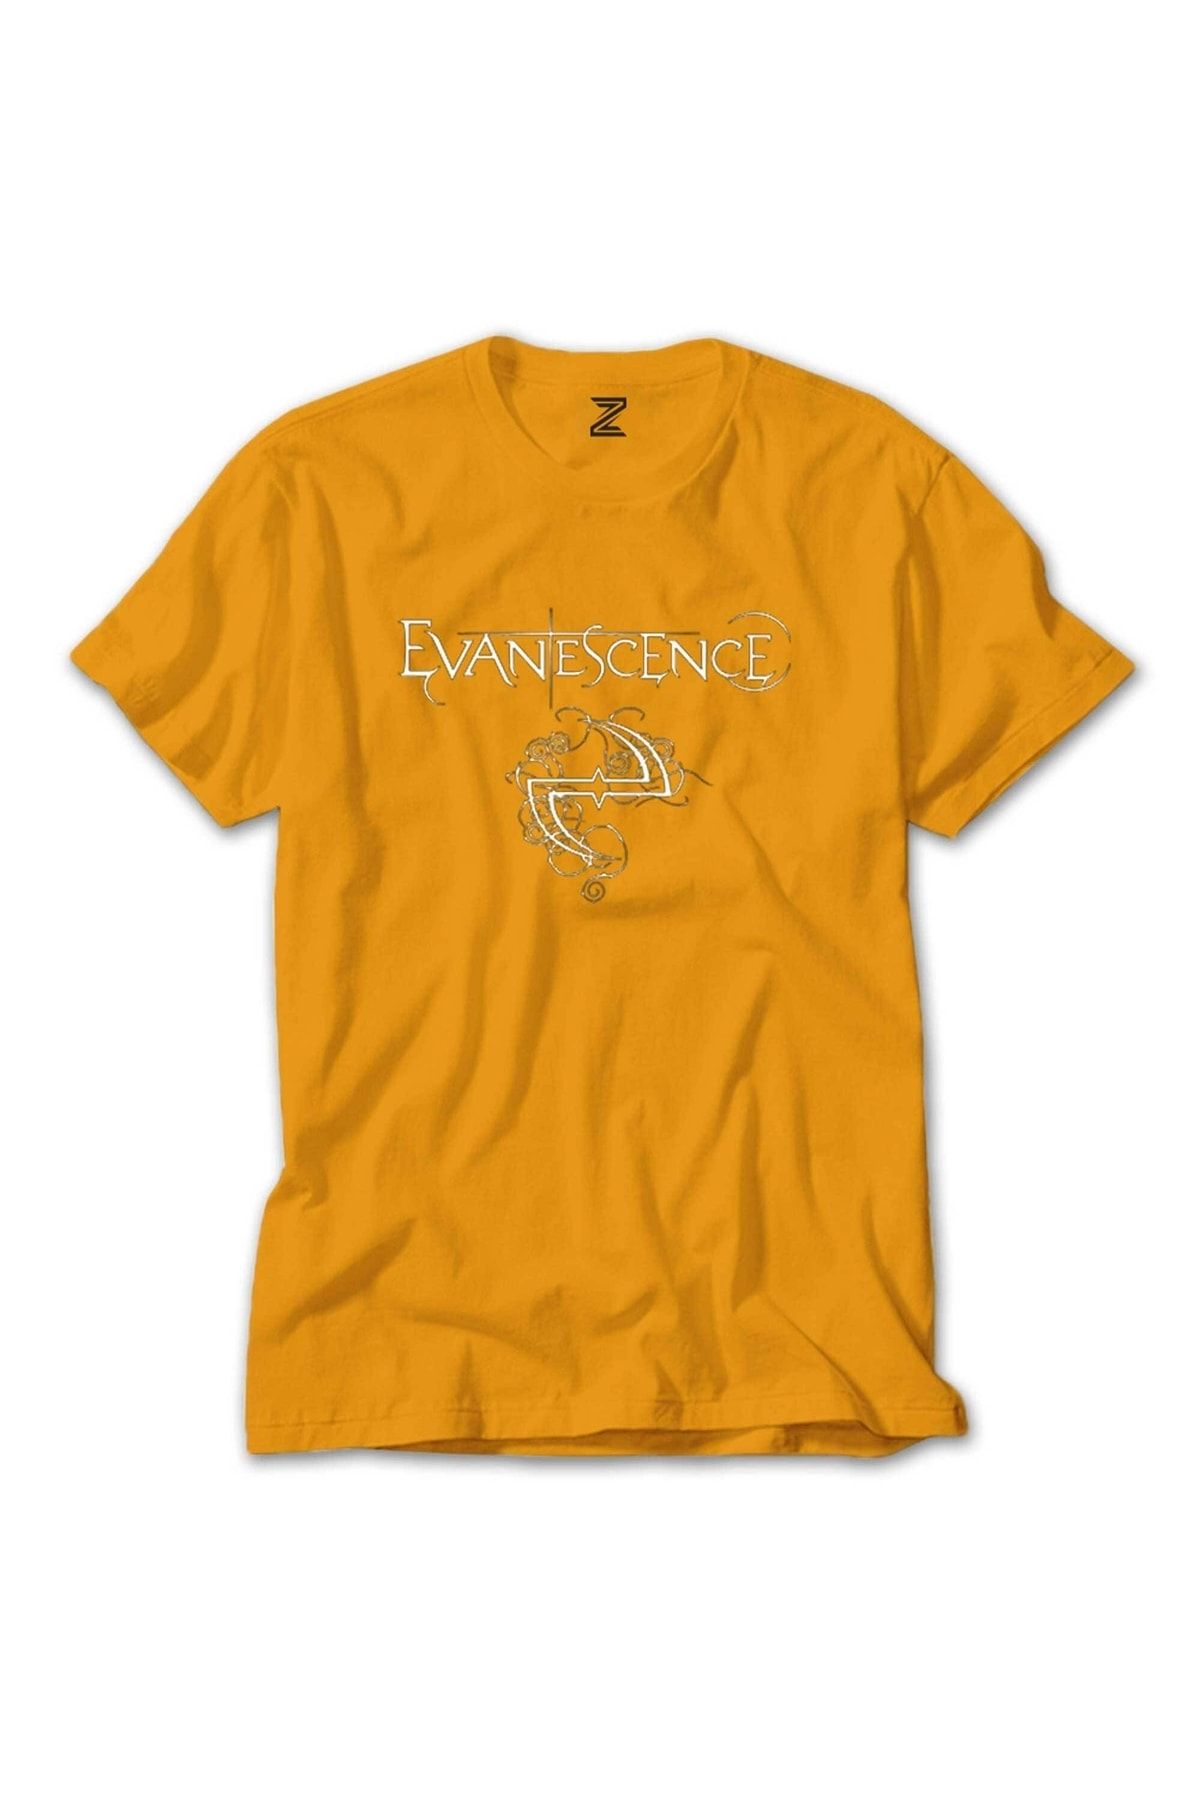 Z zepplin Evanescence Logo Ve Yazı Sarı Tişört